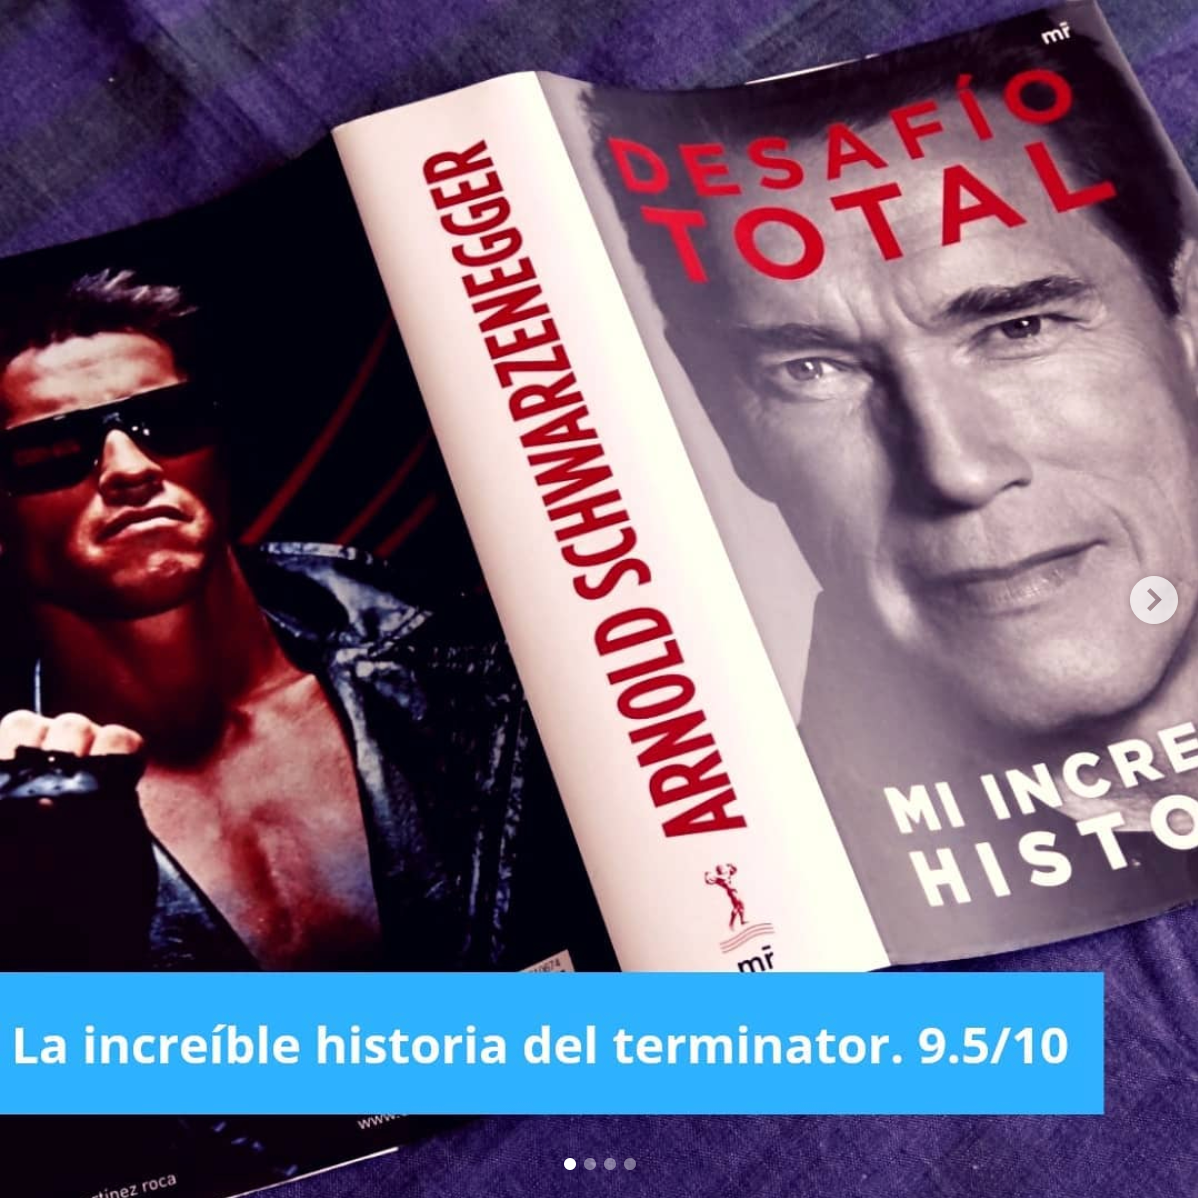 La Increíble Historia de Arnold. 'Desafío Total, Mi Increíble Historia'…, by Nicolas Rojas Nino